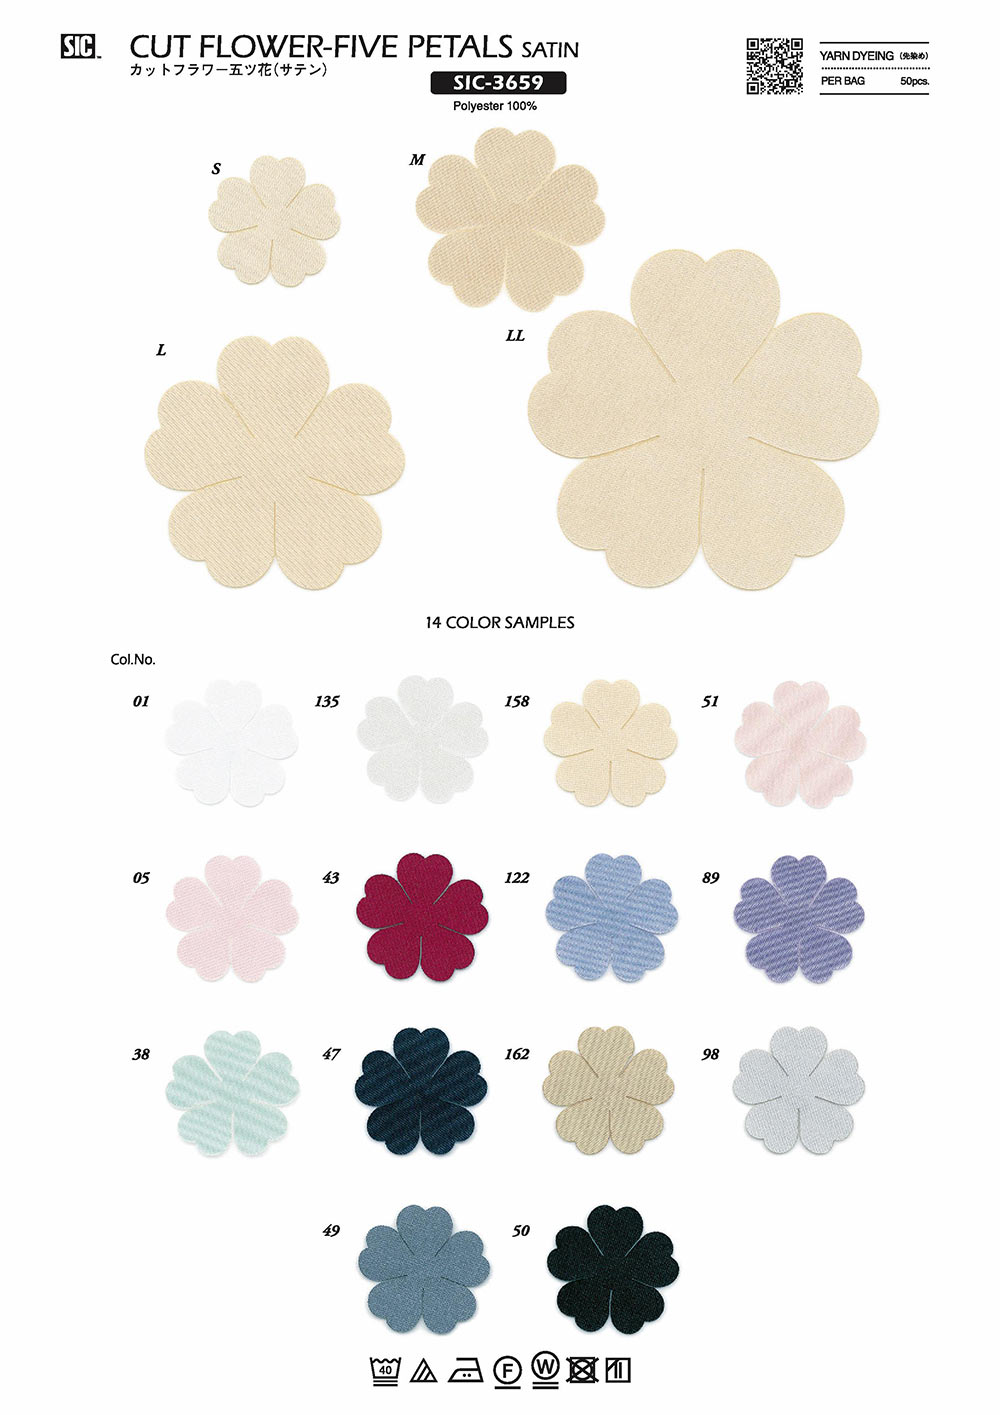 SIC-3659 Fleur Coupée Cinq Fleurs (Satin)[Marchandises Diverses Et Autres] SHINDO(SIC)